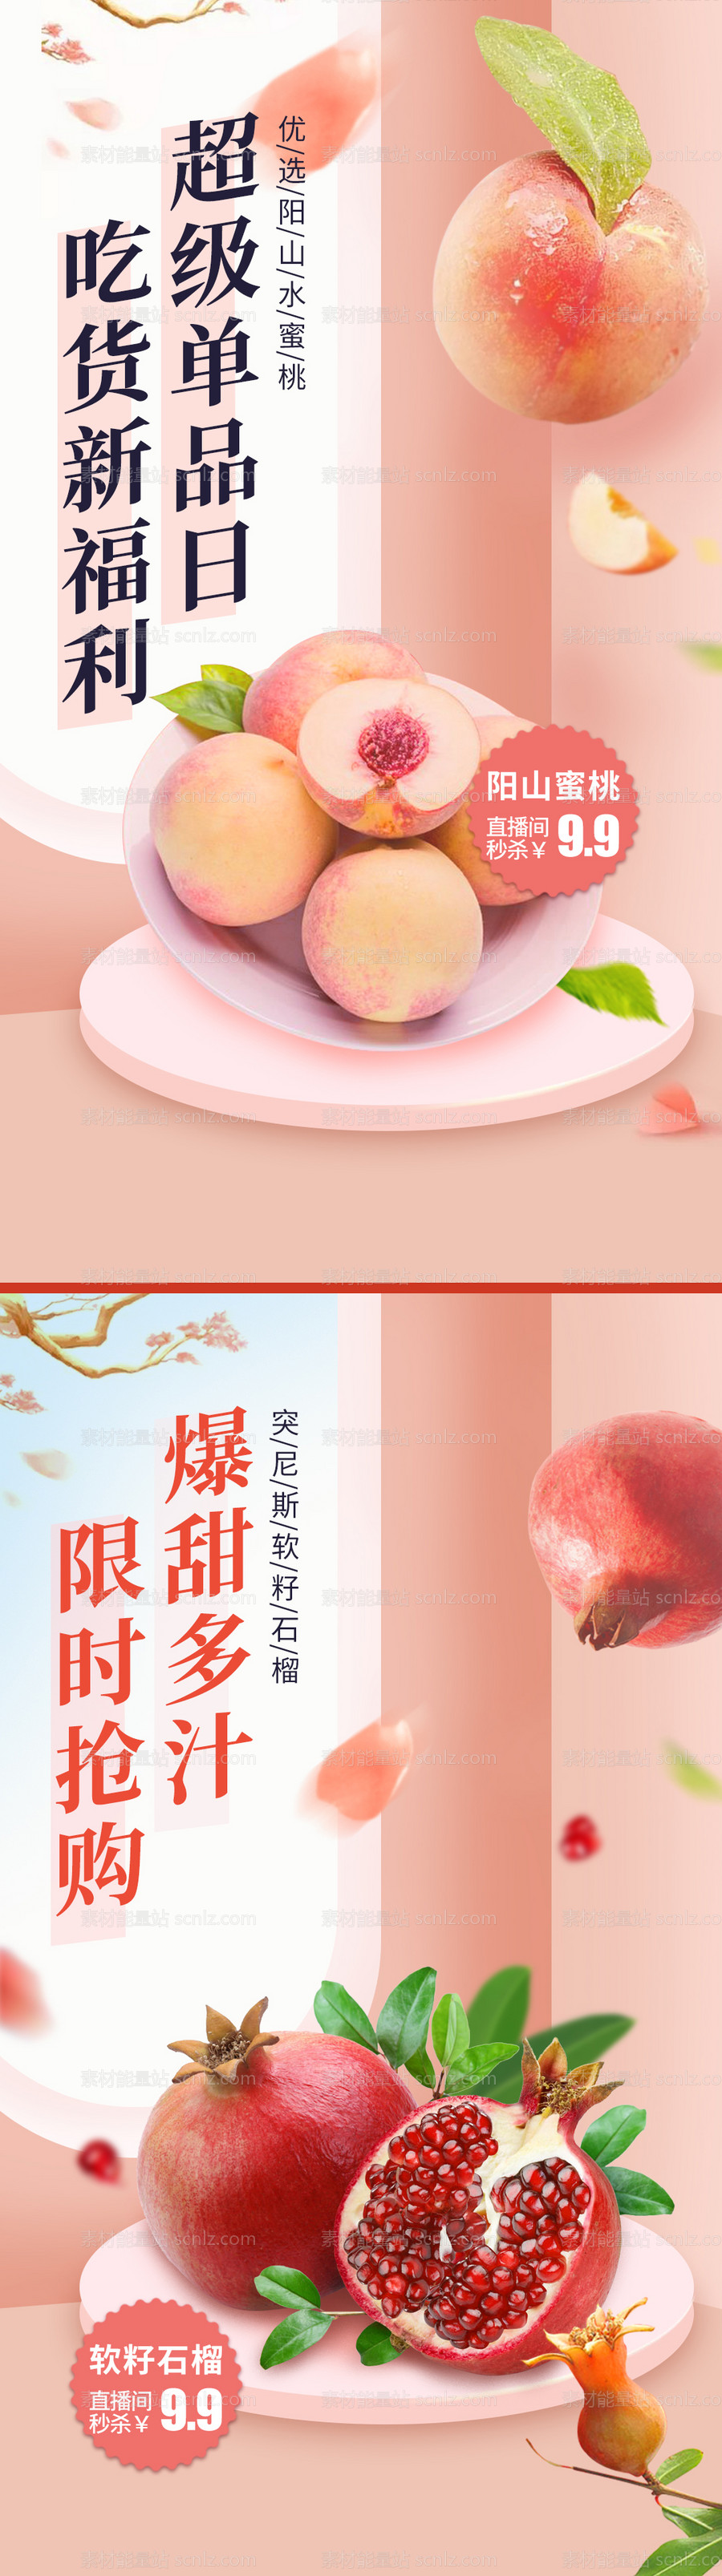 素材能量站-水果直播海报